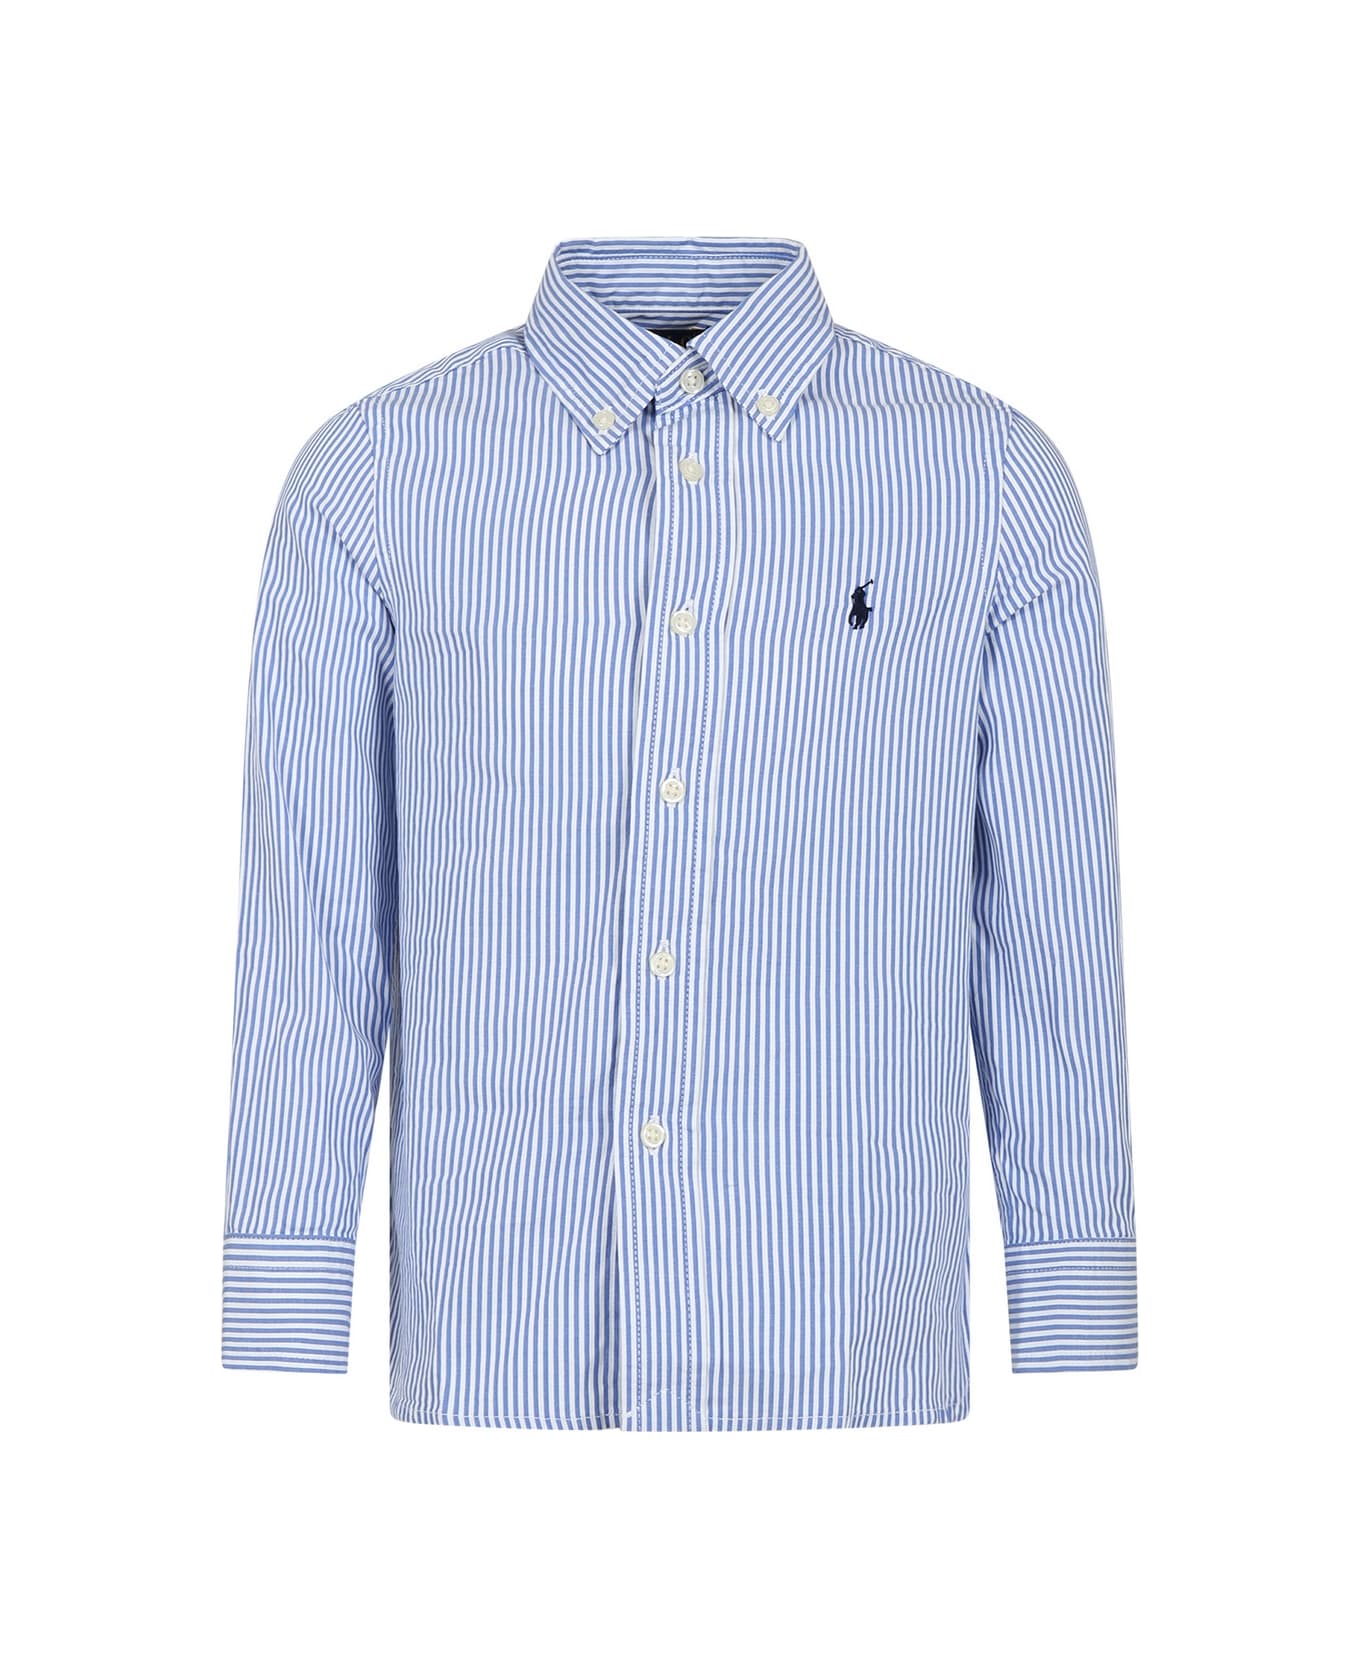 Ralph Lauren Light Blue Shirt For Boy With Logo - Light Blue シャツ